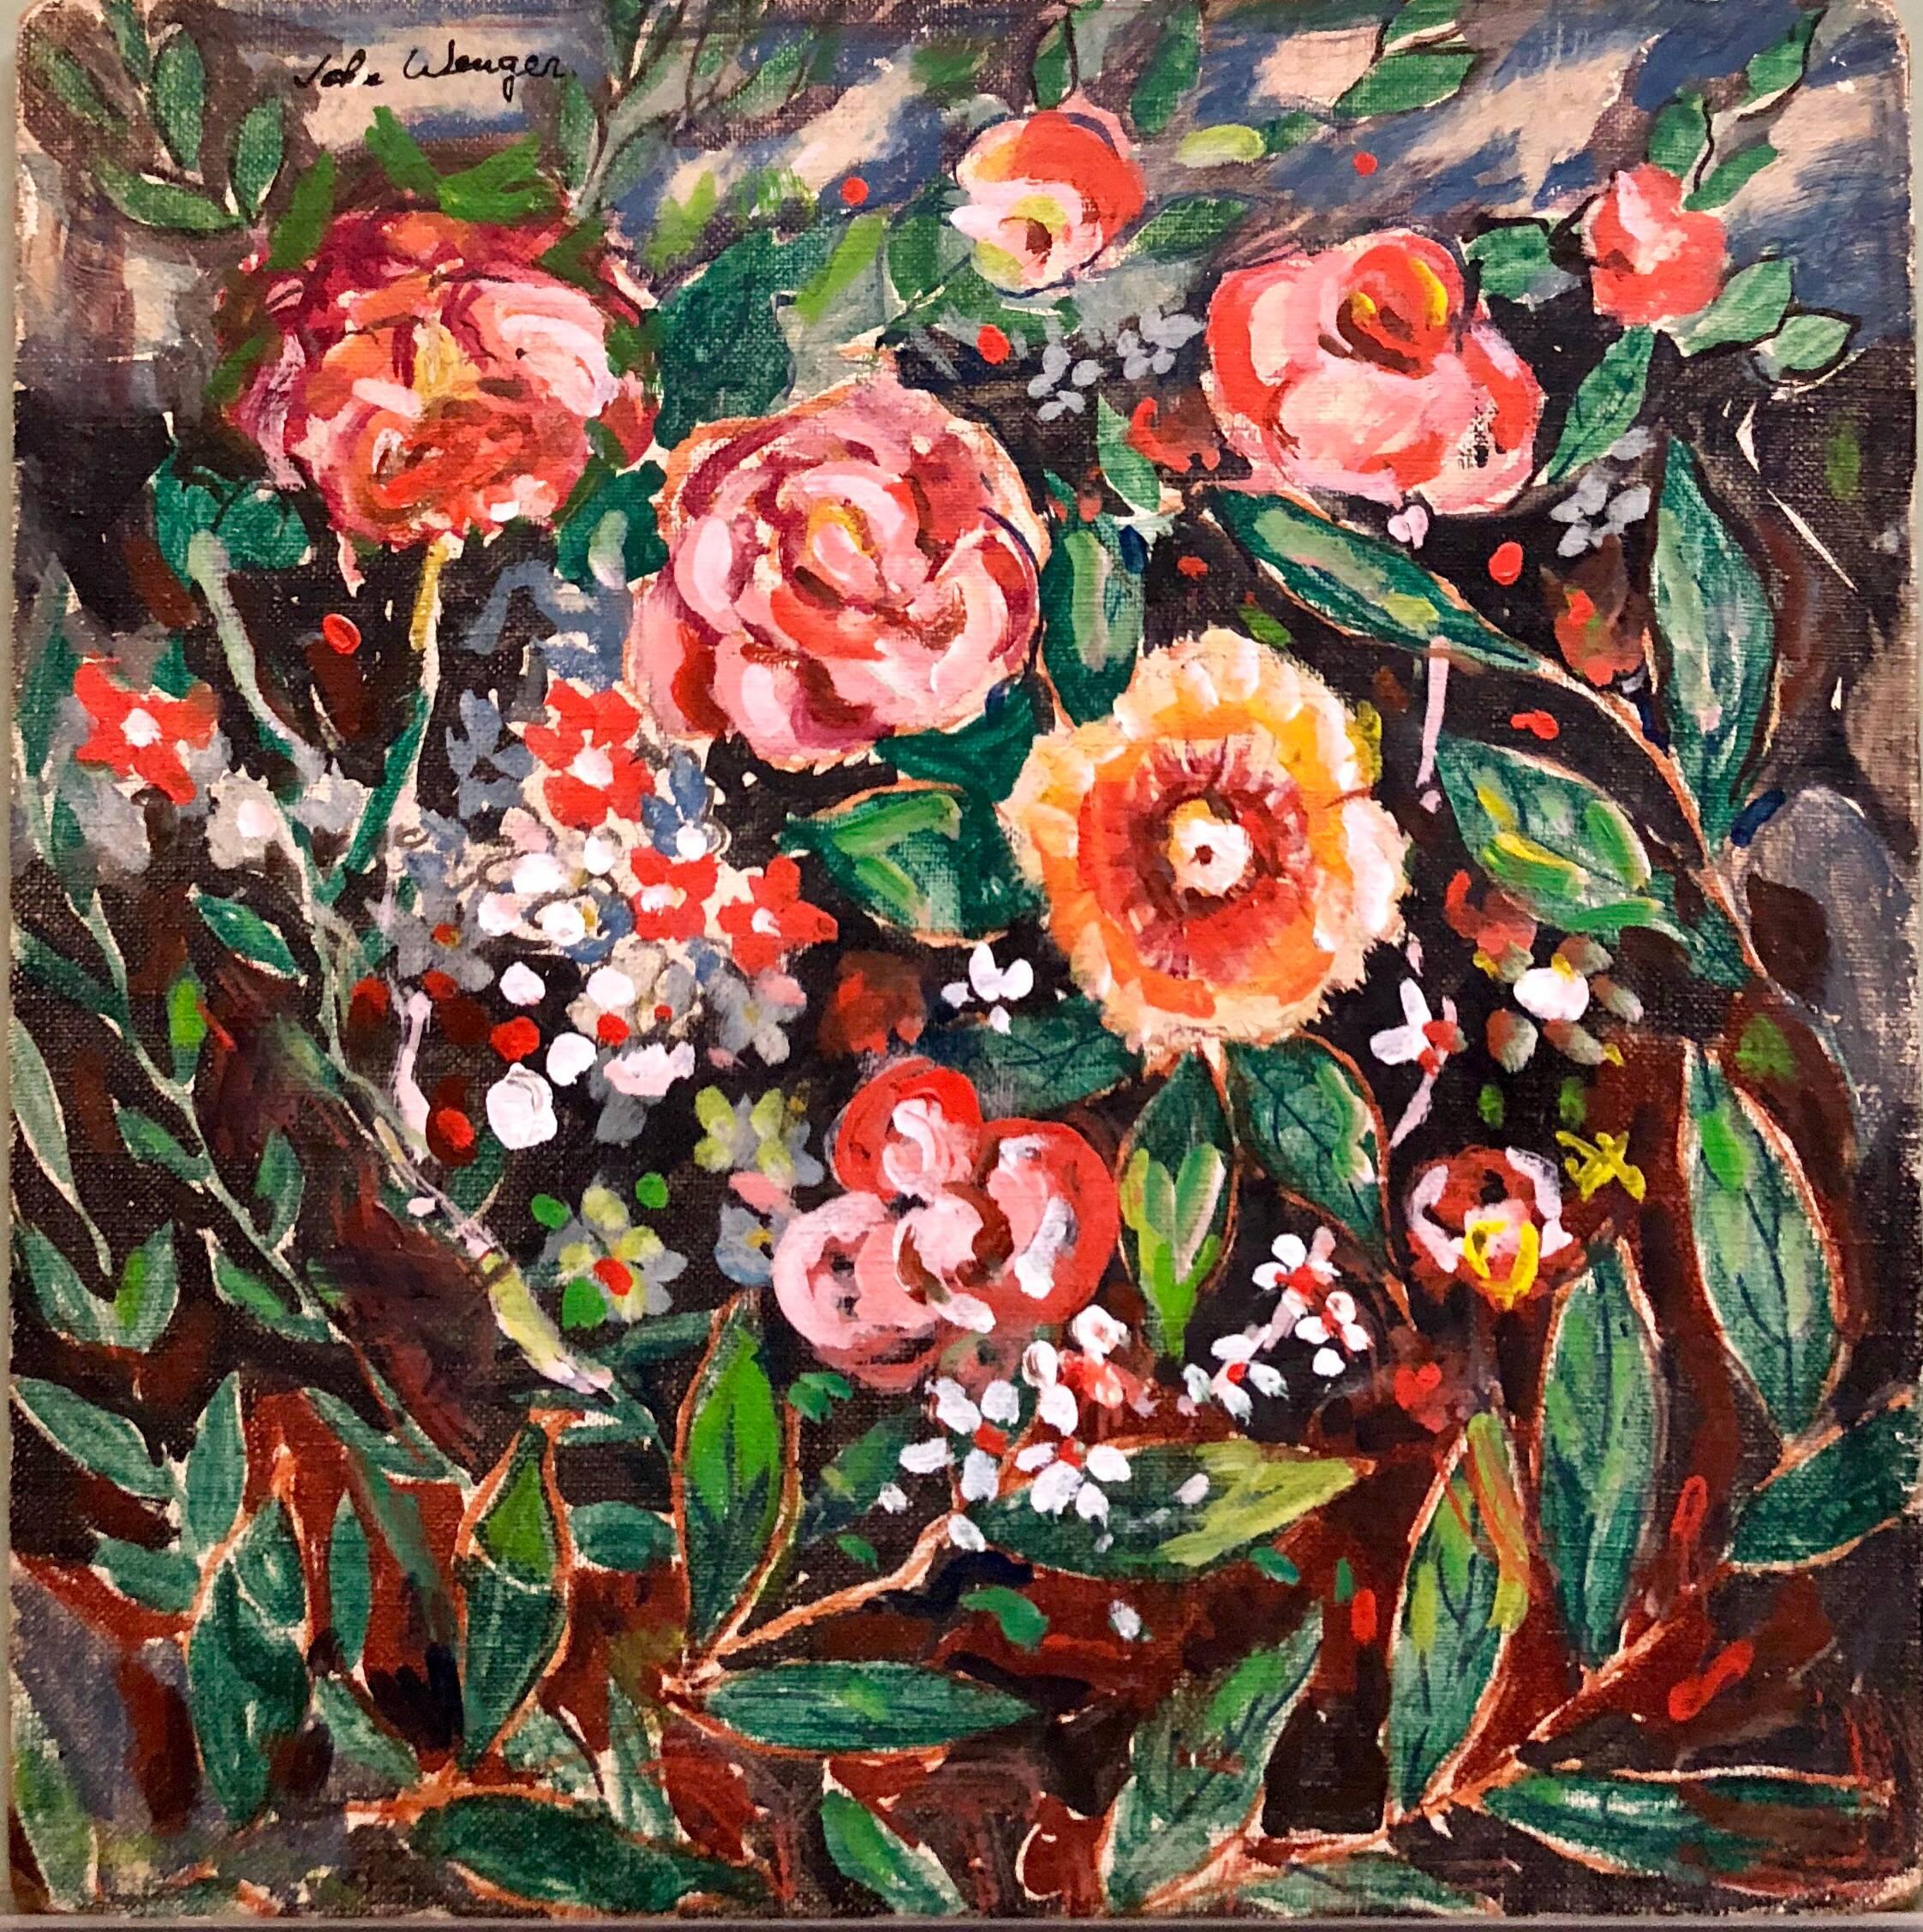 Wilde Blumen, lebhaftes, farbenfrohes, modernes Ölgemälde – Painting von John Wenger